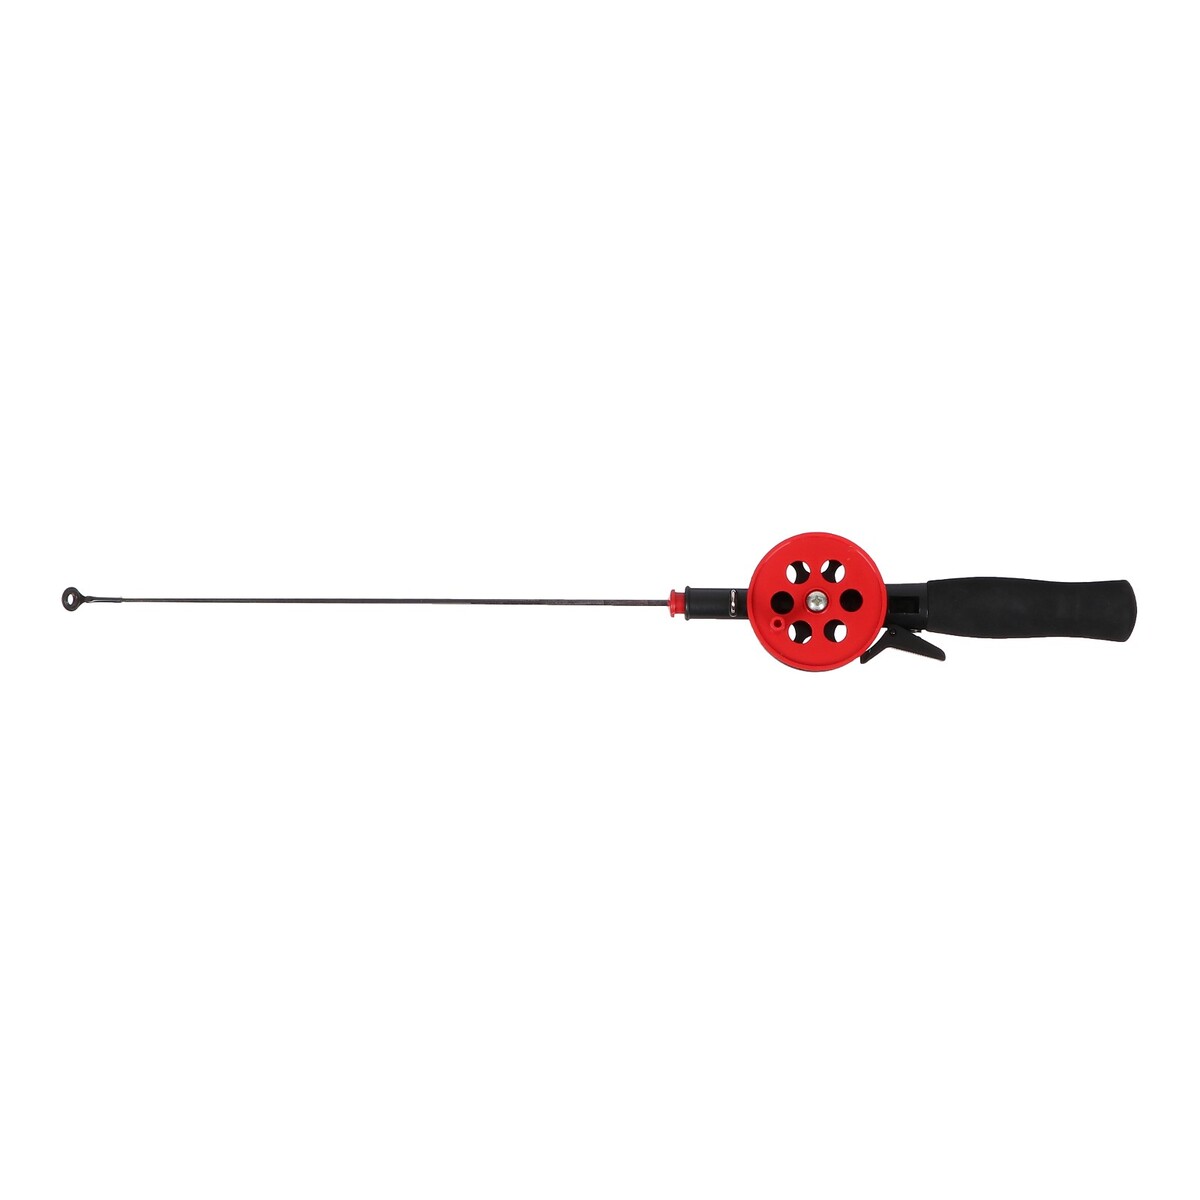 Удочка зимняя, ручка неопрен, длина 42 см, цвет красный, hbf-34(1) удочка зимняя ручка неопрен hfb 8